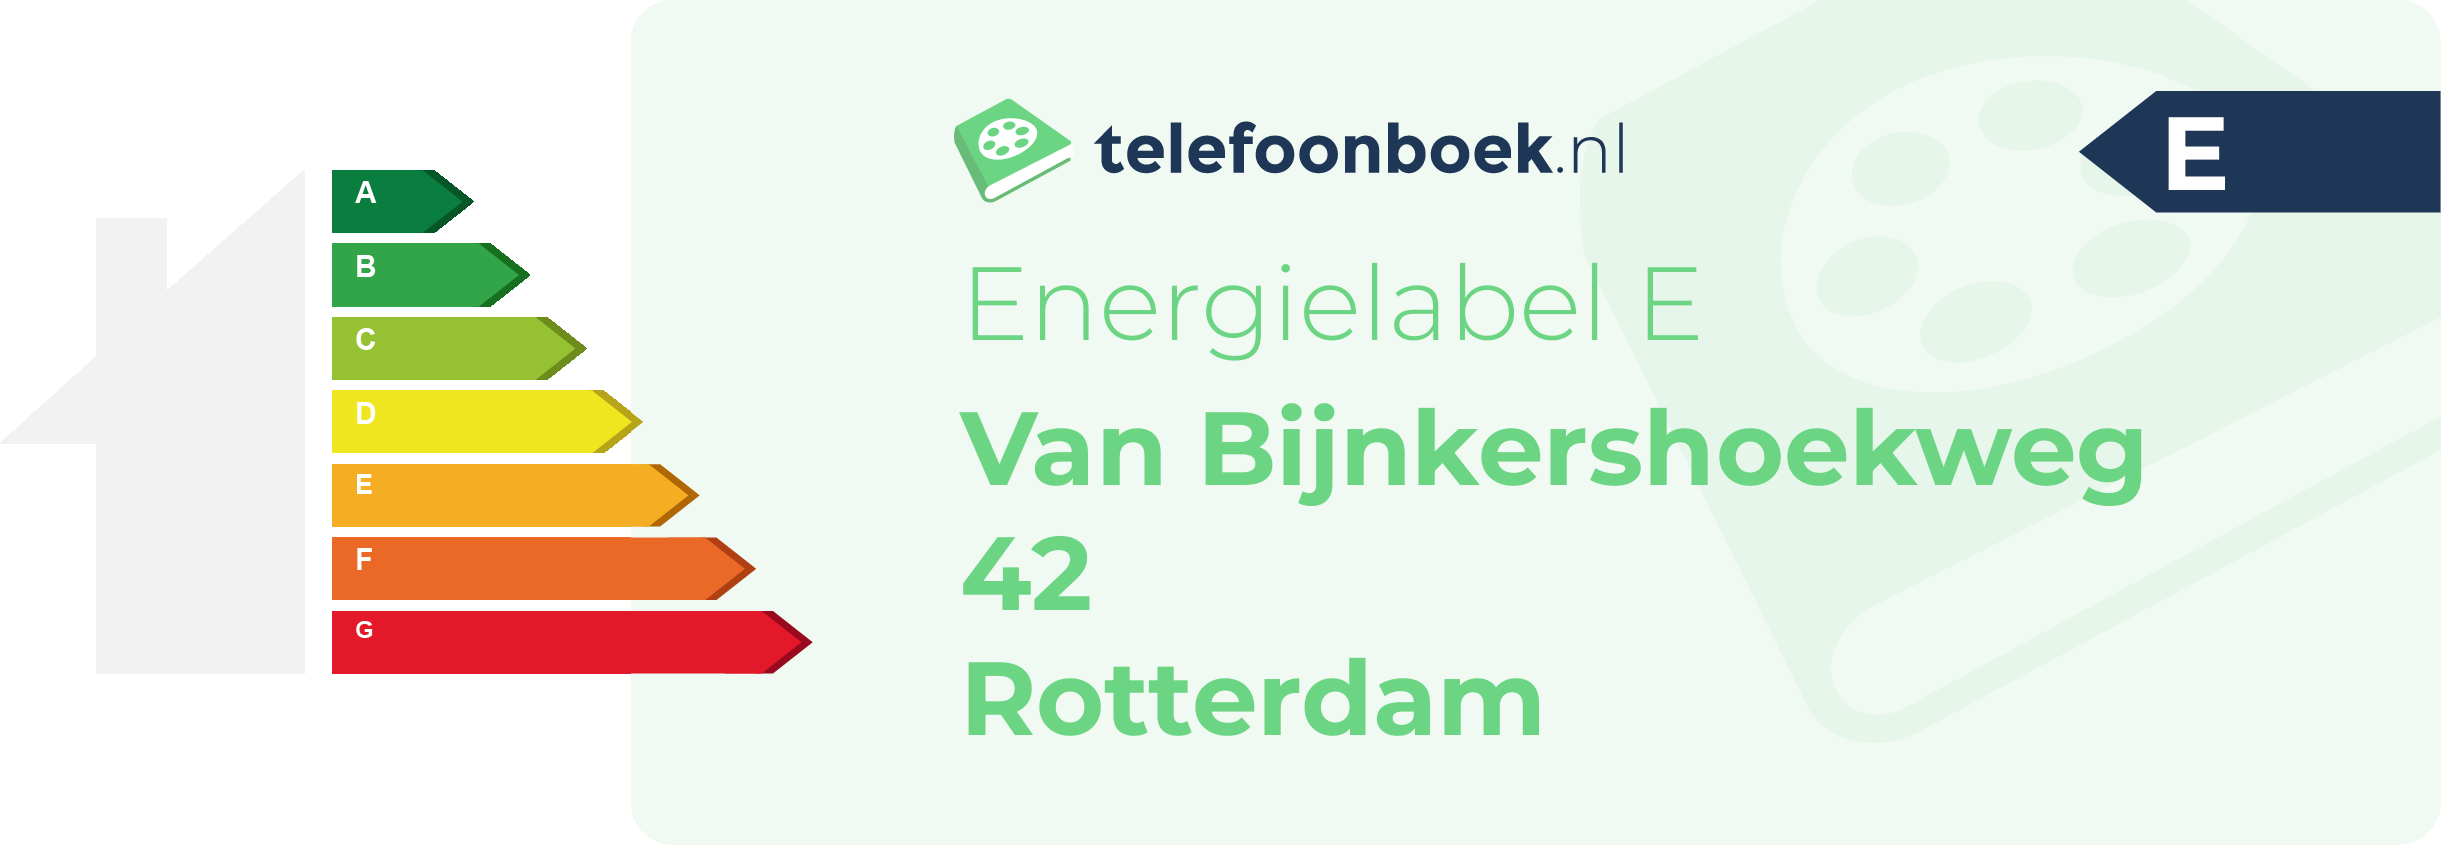 Energielabel Van Bijnkershoekweg 42 Rotterdam